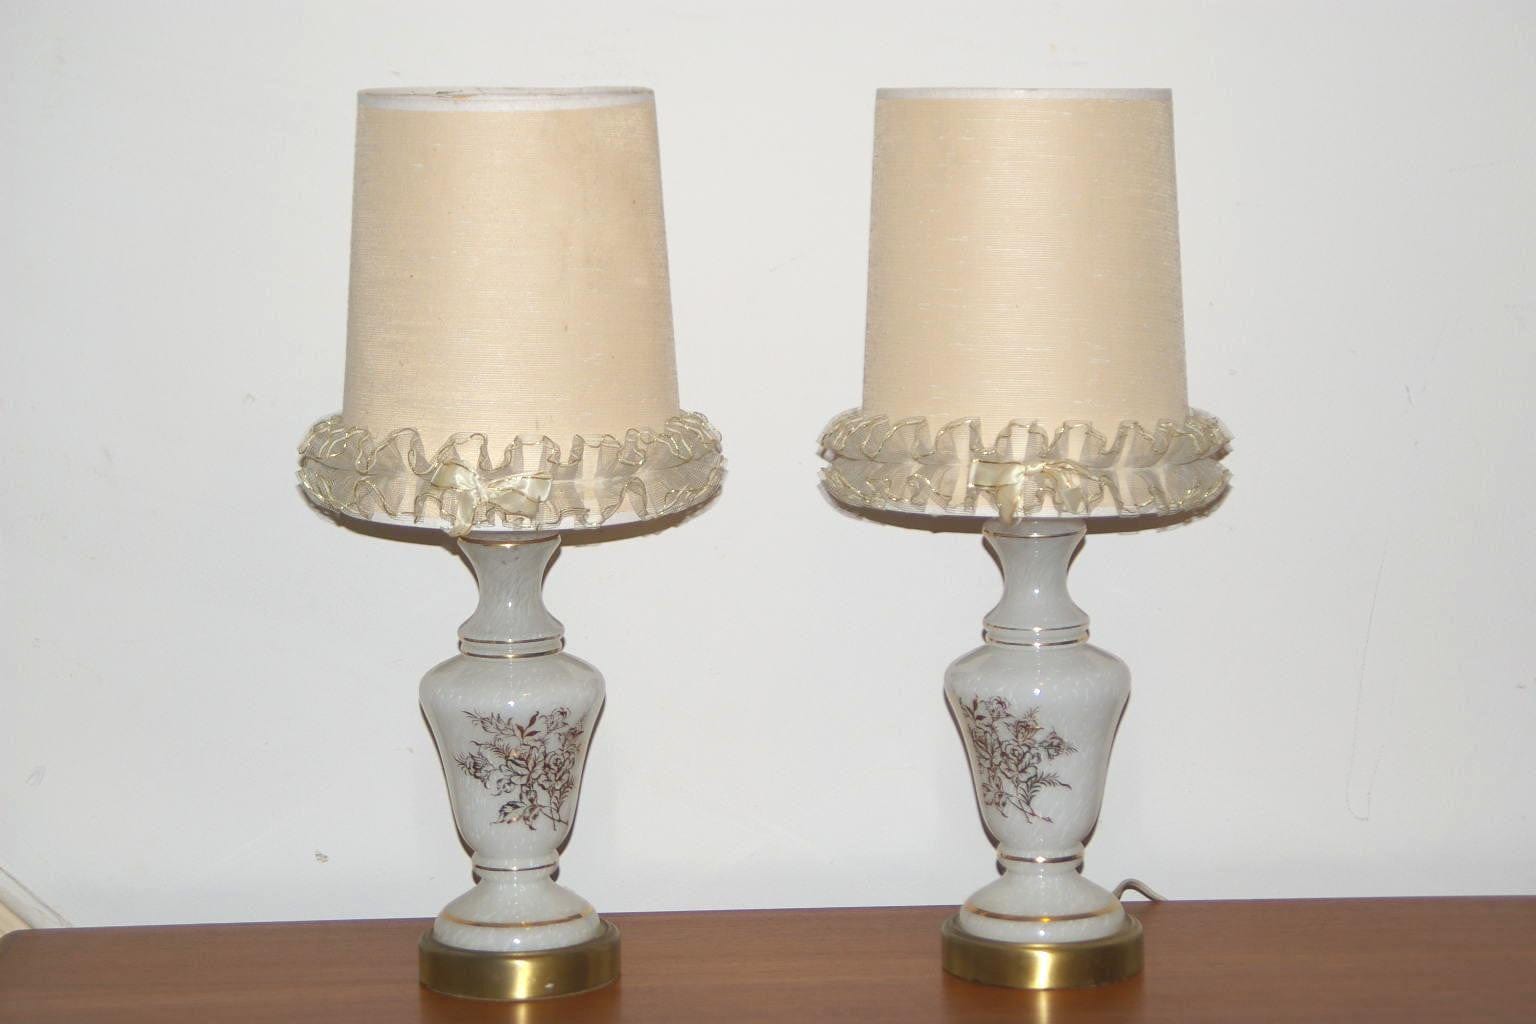 https://cdn.shopify.com/s/files/1/0268/0005/files/i-like-mike-s-mid-century-modern-lighting-pair-white-glass-gold-leaf-boudoir-lamps-354817201_1600x.jpg?v=1690436346